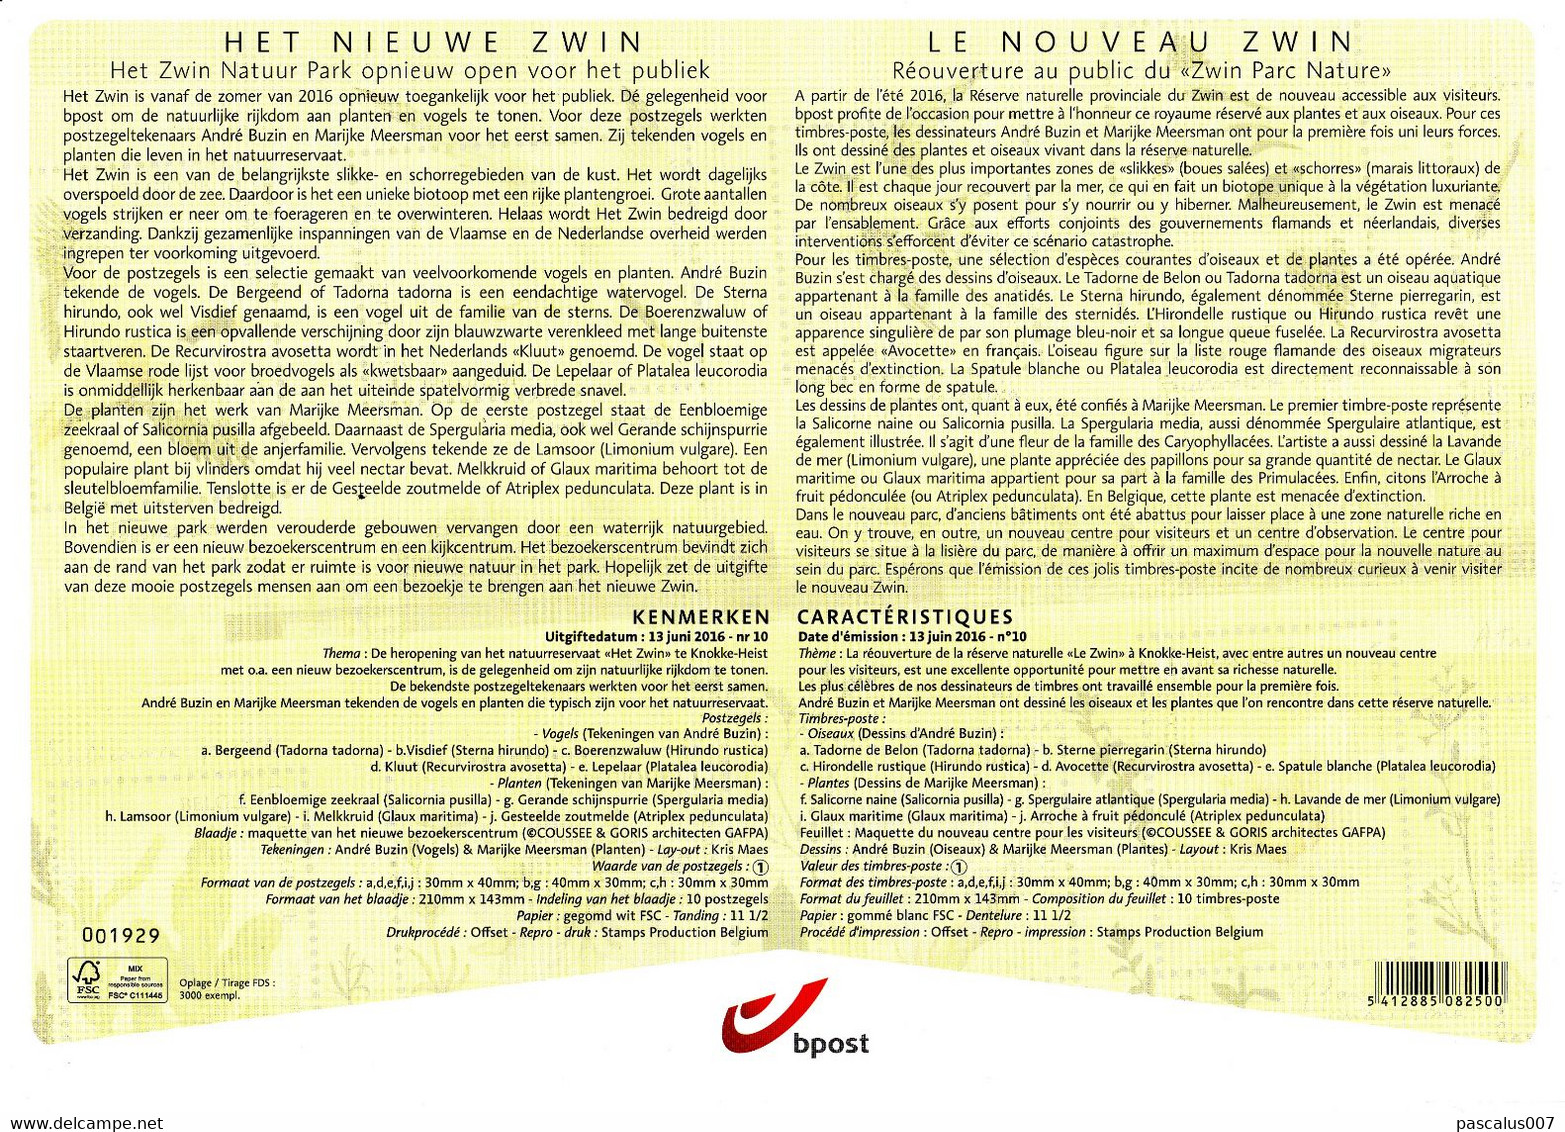 13,2016-10 4601 4610 BL 237 Belgique A4 FDS First Day Sheet  Le Nouveau Zwin  13-6-2016 - 2011-2014